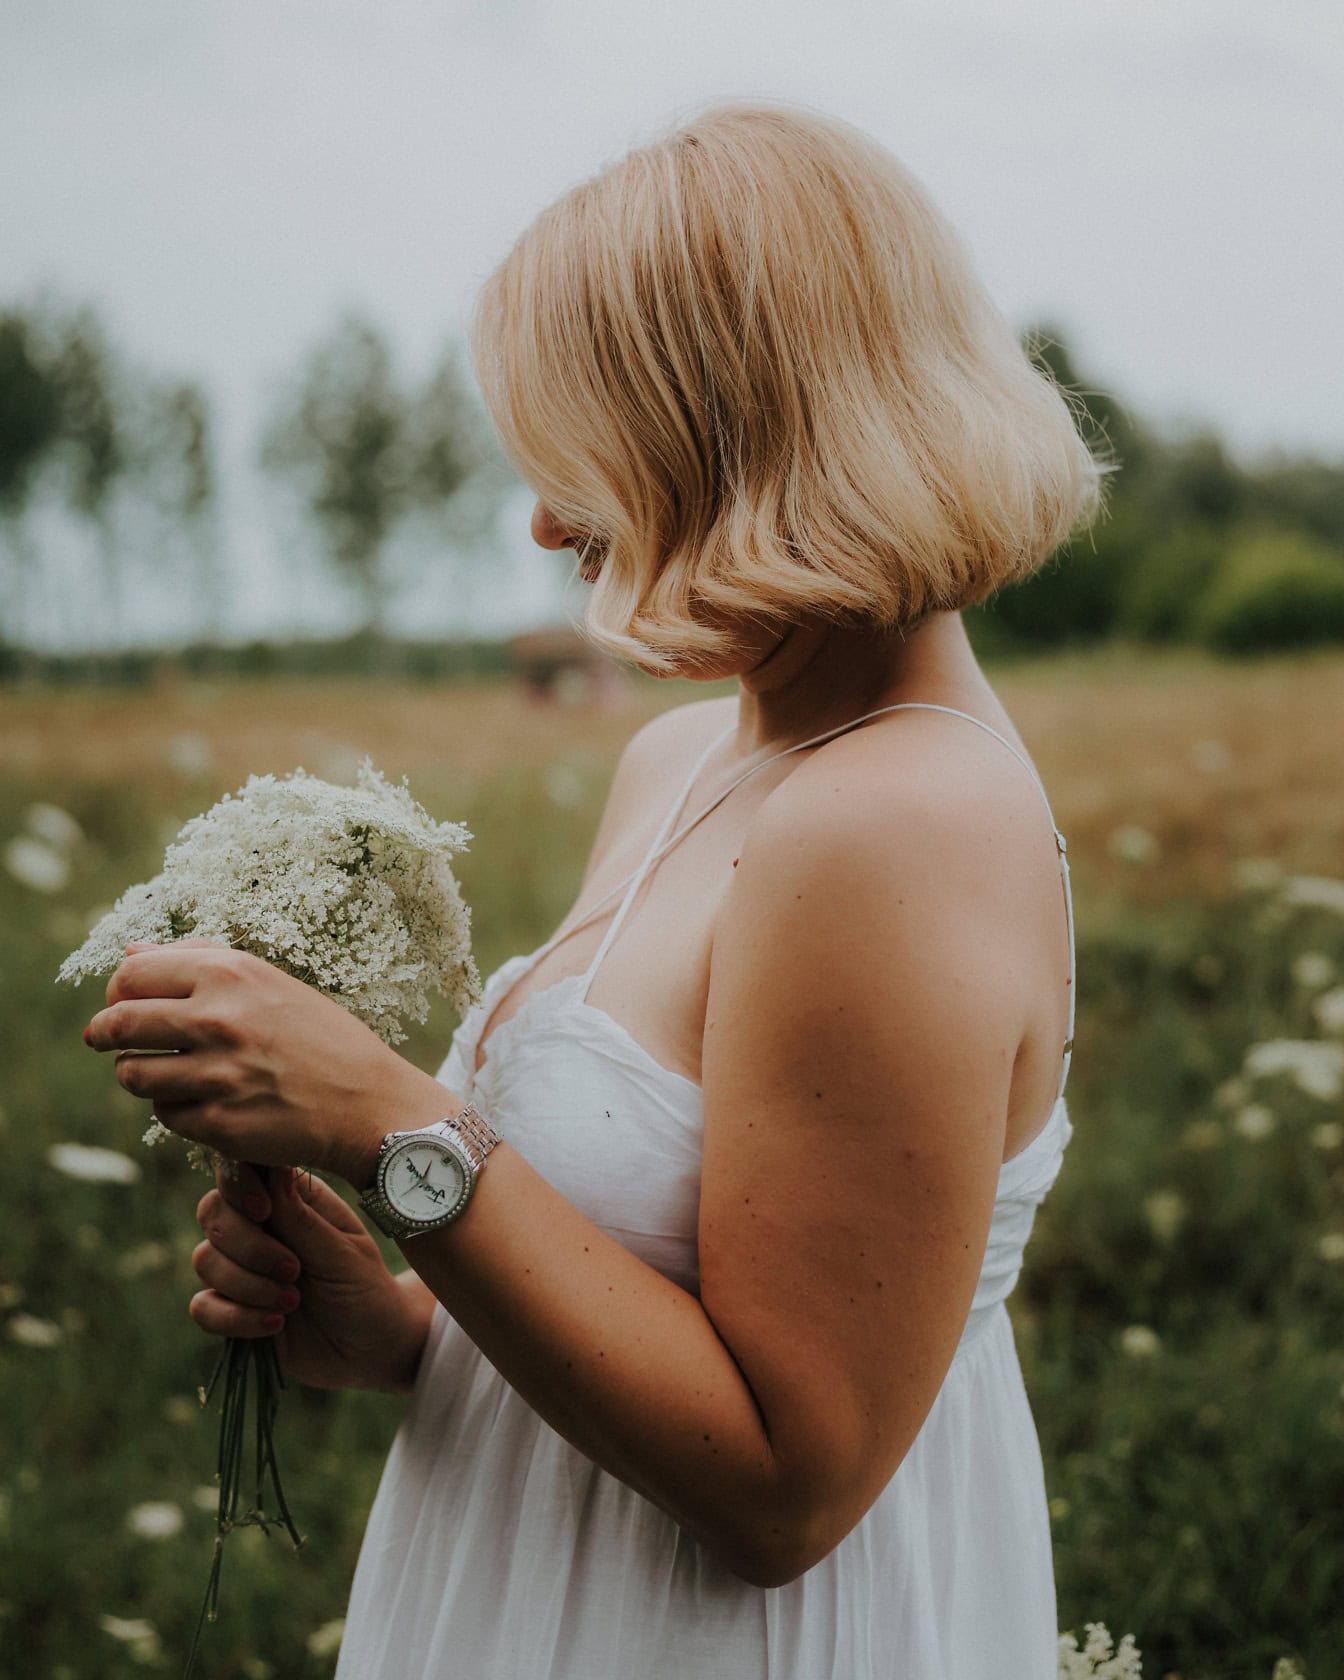 Вид сбоку блондинки в белом платье в стиле кантри, держащей букет белых полевых цветов